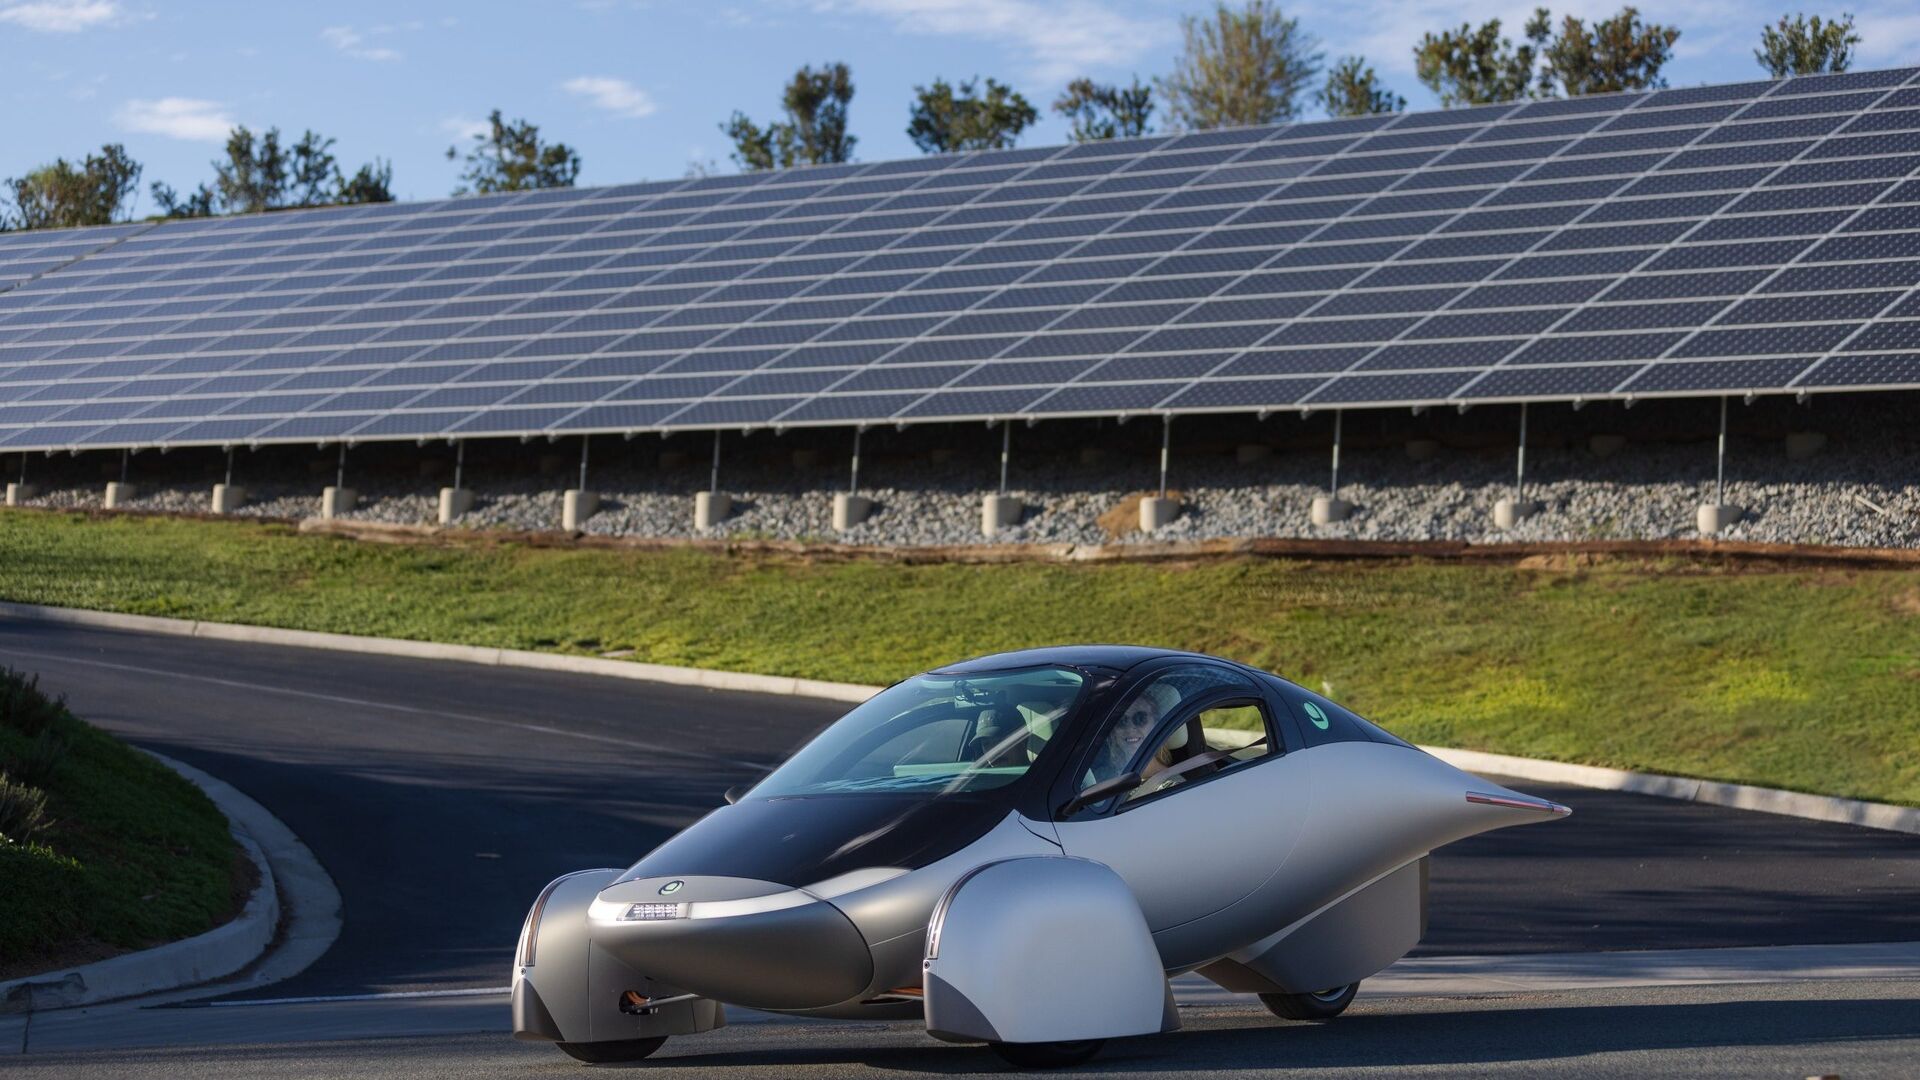 Ô tô năng lượng mặt trời: Aptera Delta là ô tô bền vững nhất trên thế giới, với phạm vi hoạt động 1600 km bằng năng lượng pin và 70 km bằng năng lượng mặt trời